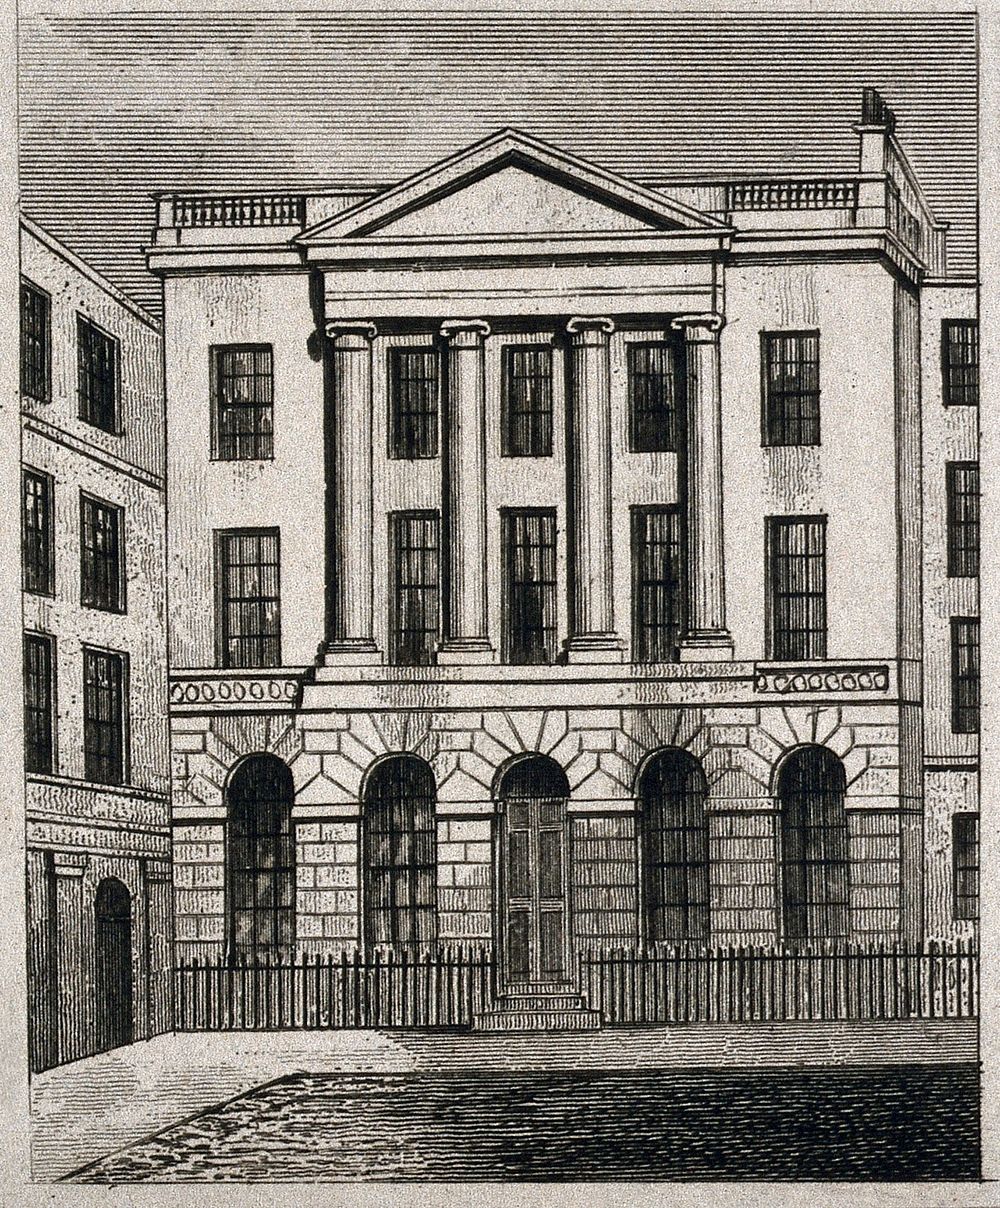 Serjeants' Inn, Fleet Street, London. Engraving by J. Shury after T. H. Shepherd, 1833.